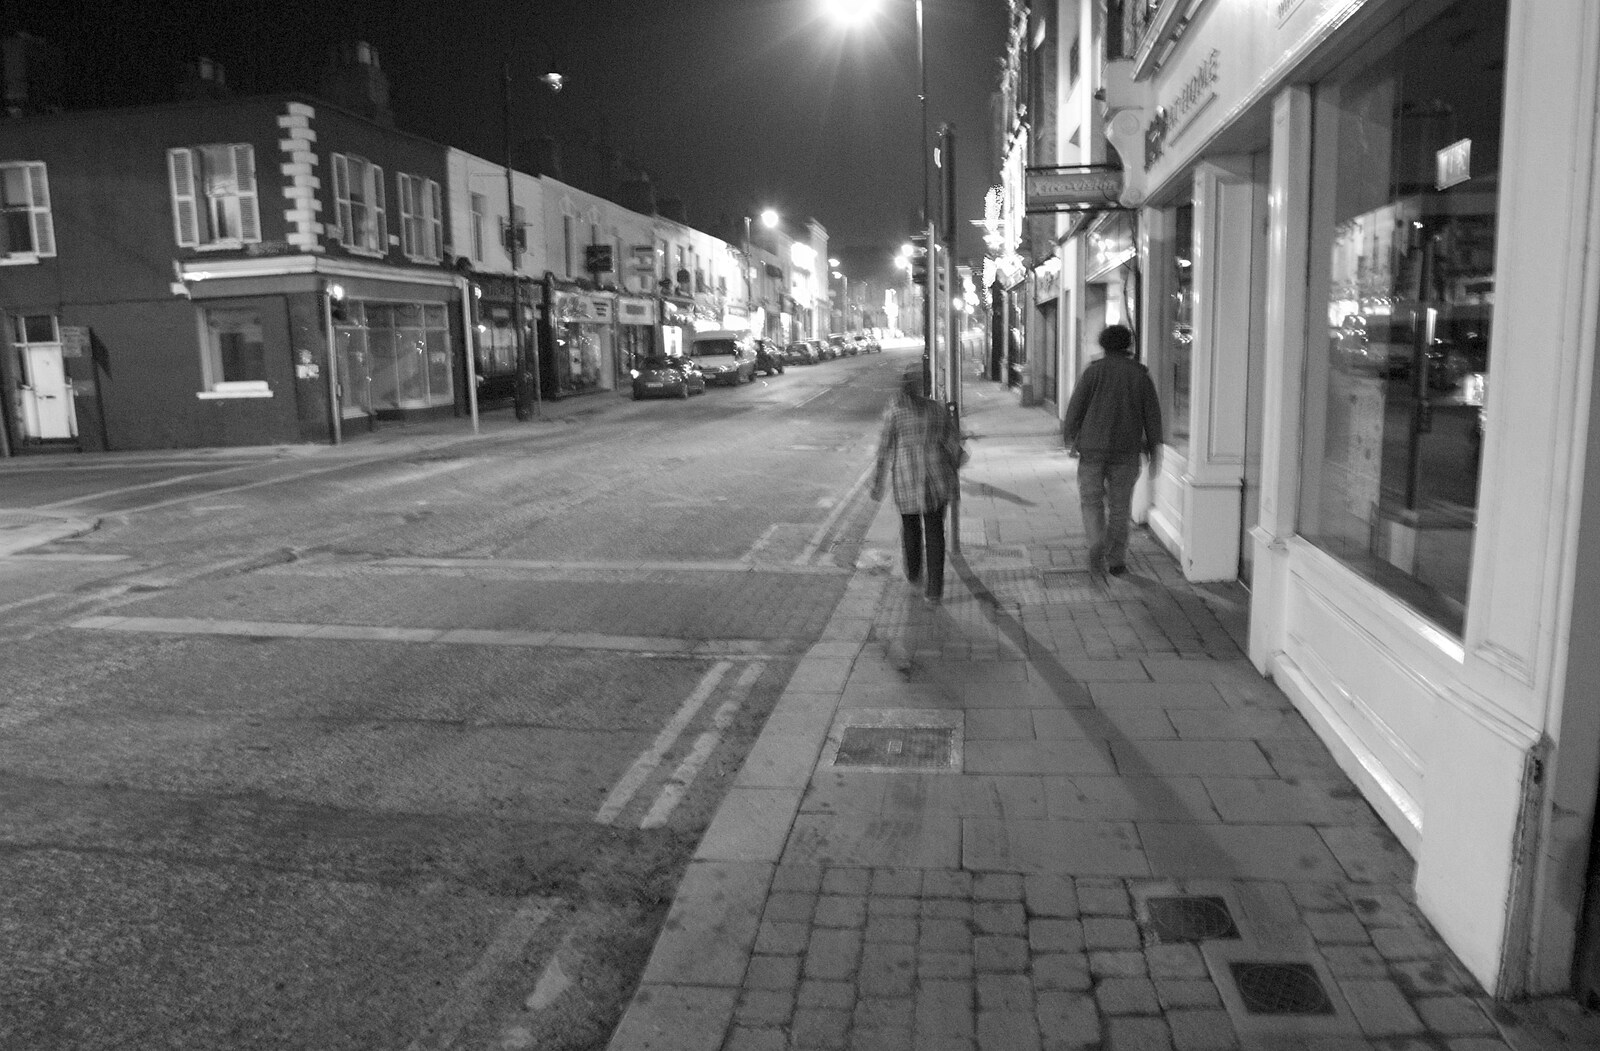 Blackrock Main Street from A Week in Monkstown, County Dublin, Ireland - 1st March 2011